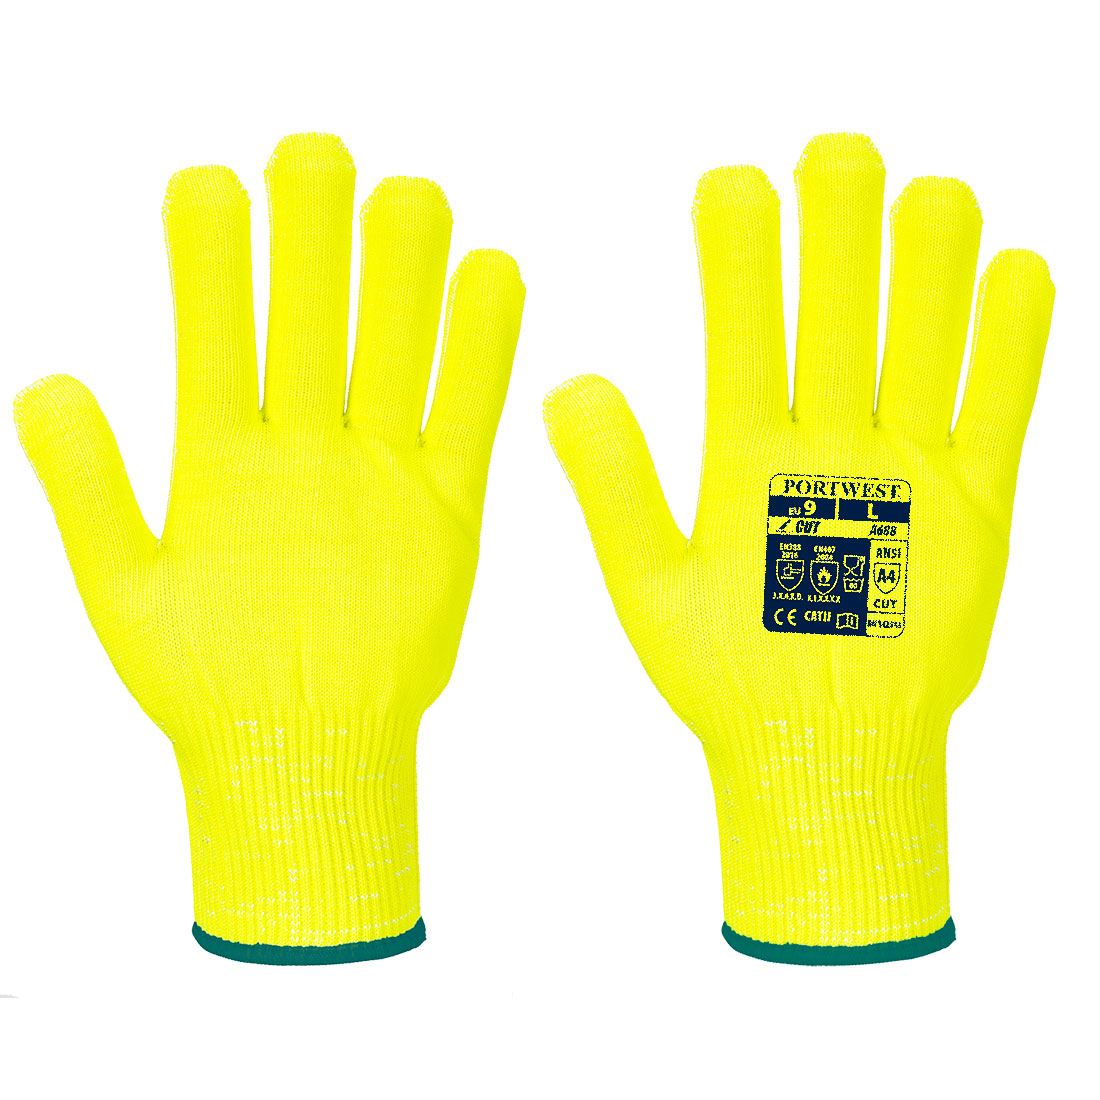 Portwest Pro Cut Liner Gloves